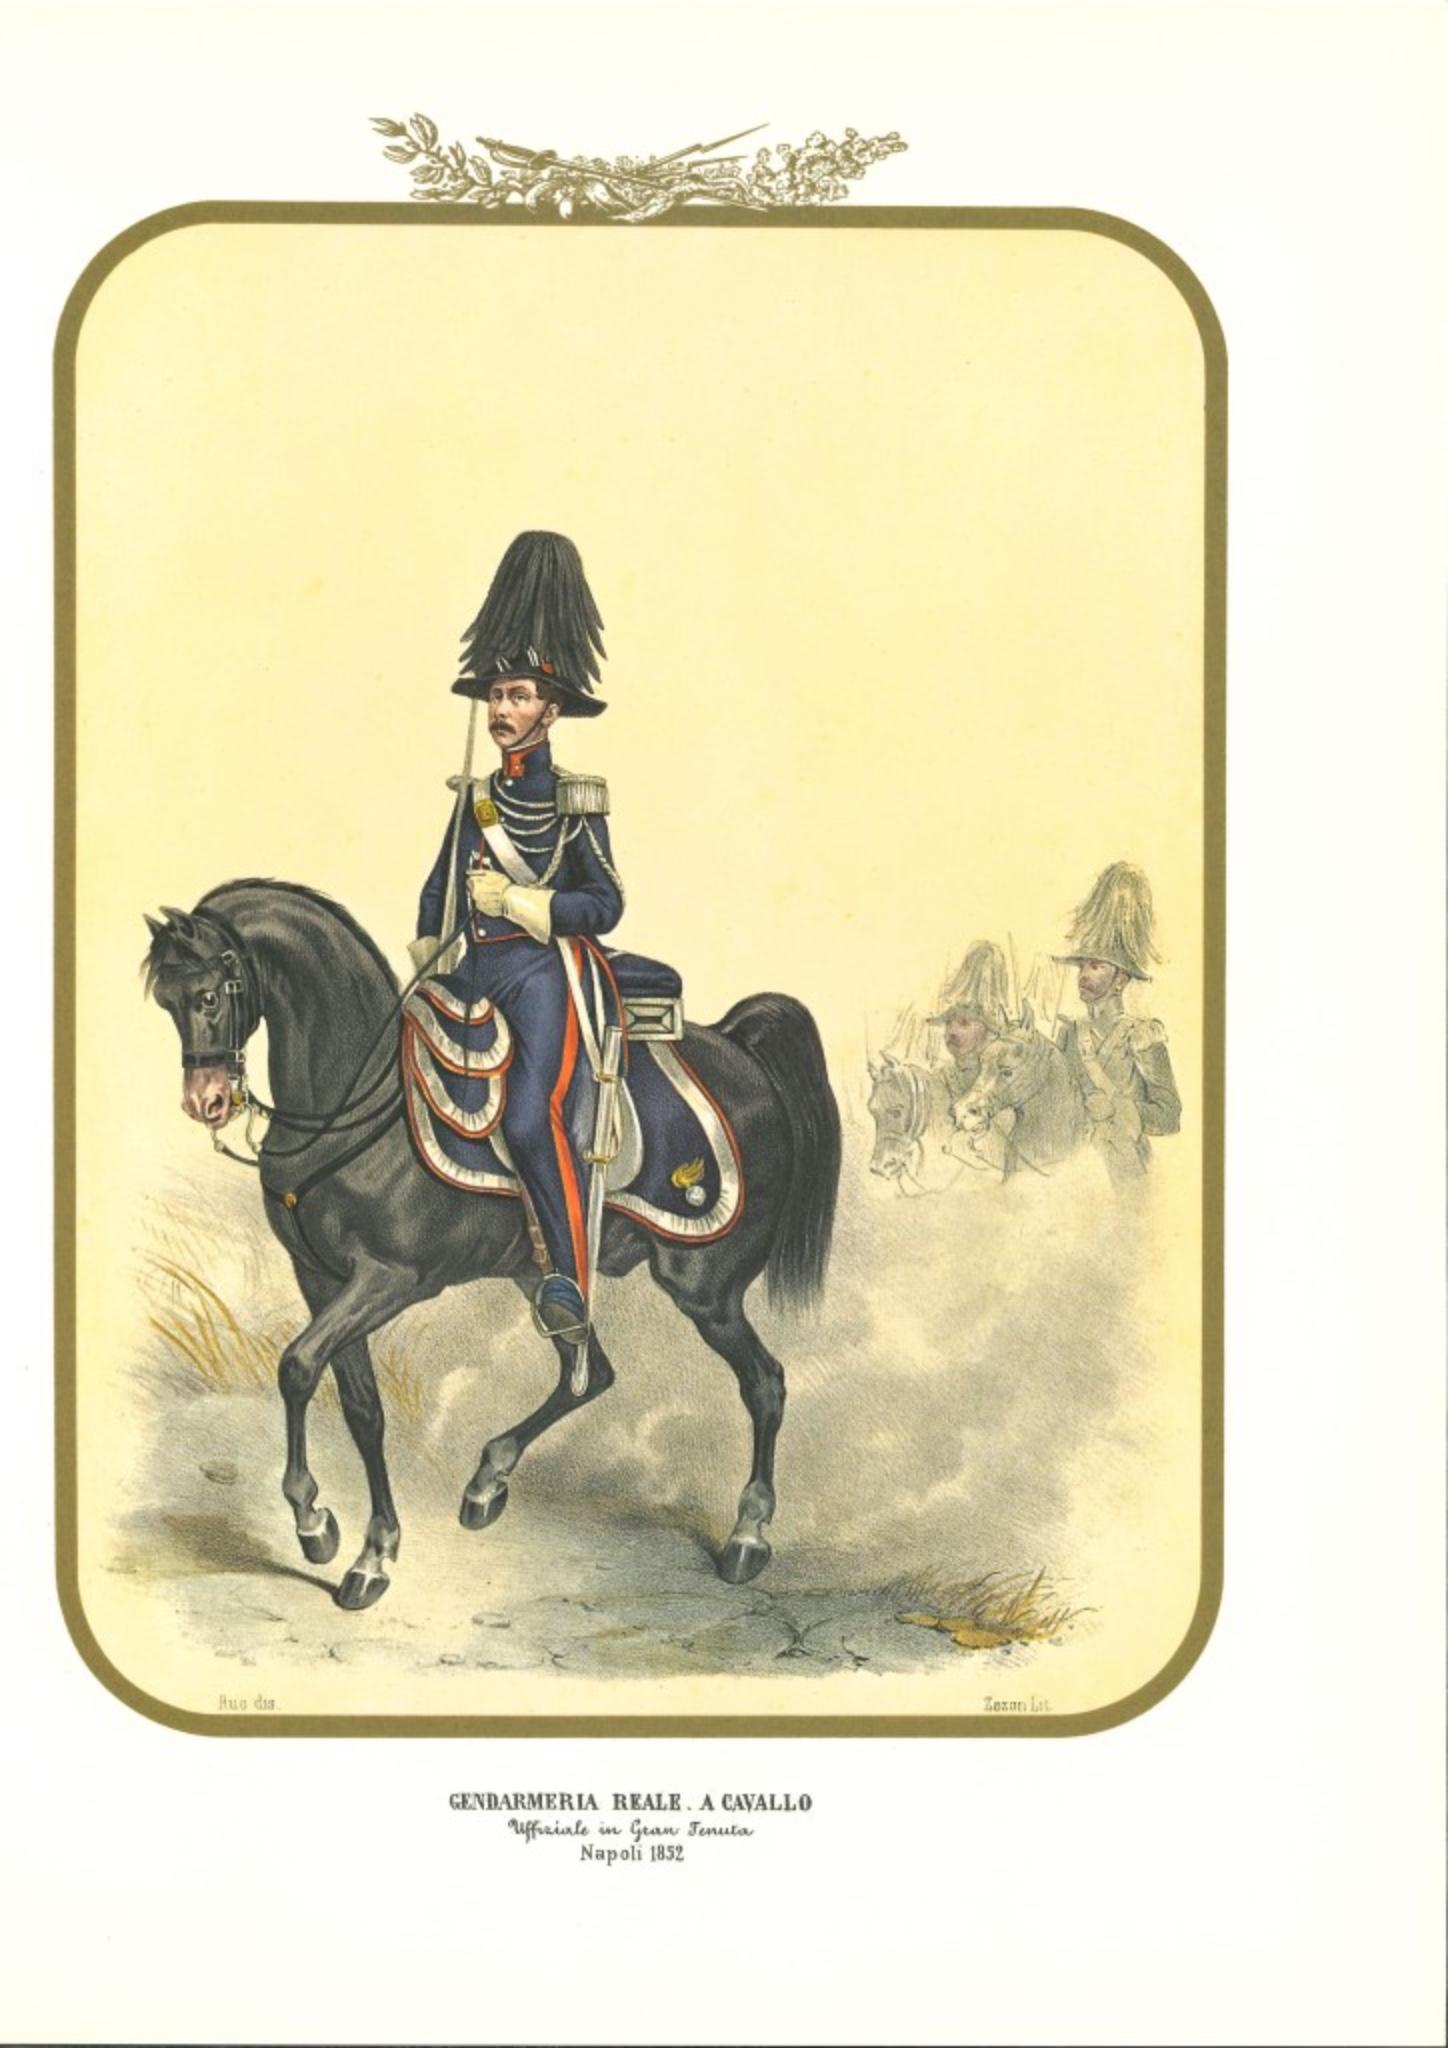 La Gendarmerie royale à cheval est une lithographie d'Antonio Zezon. Naples 1852.

Intéressante lithographie en couleur qui décrit un officier de la gendarmerie royale chevauchant son cheval.

En excellent état, cette estampe appartient à l'une des